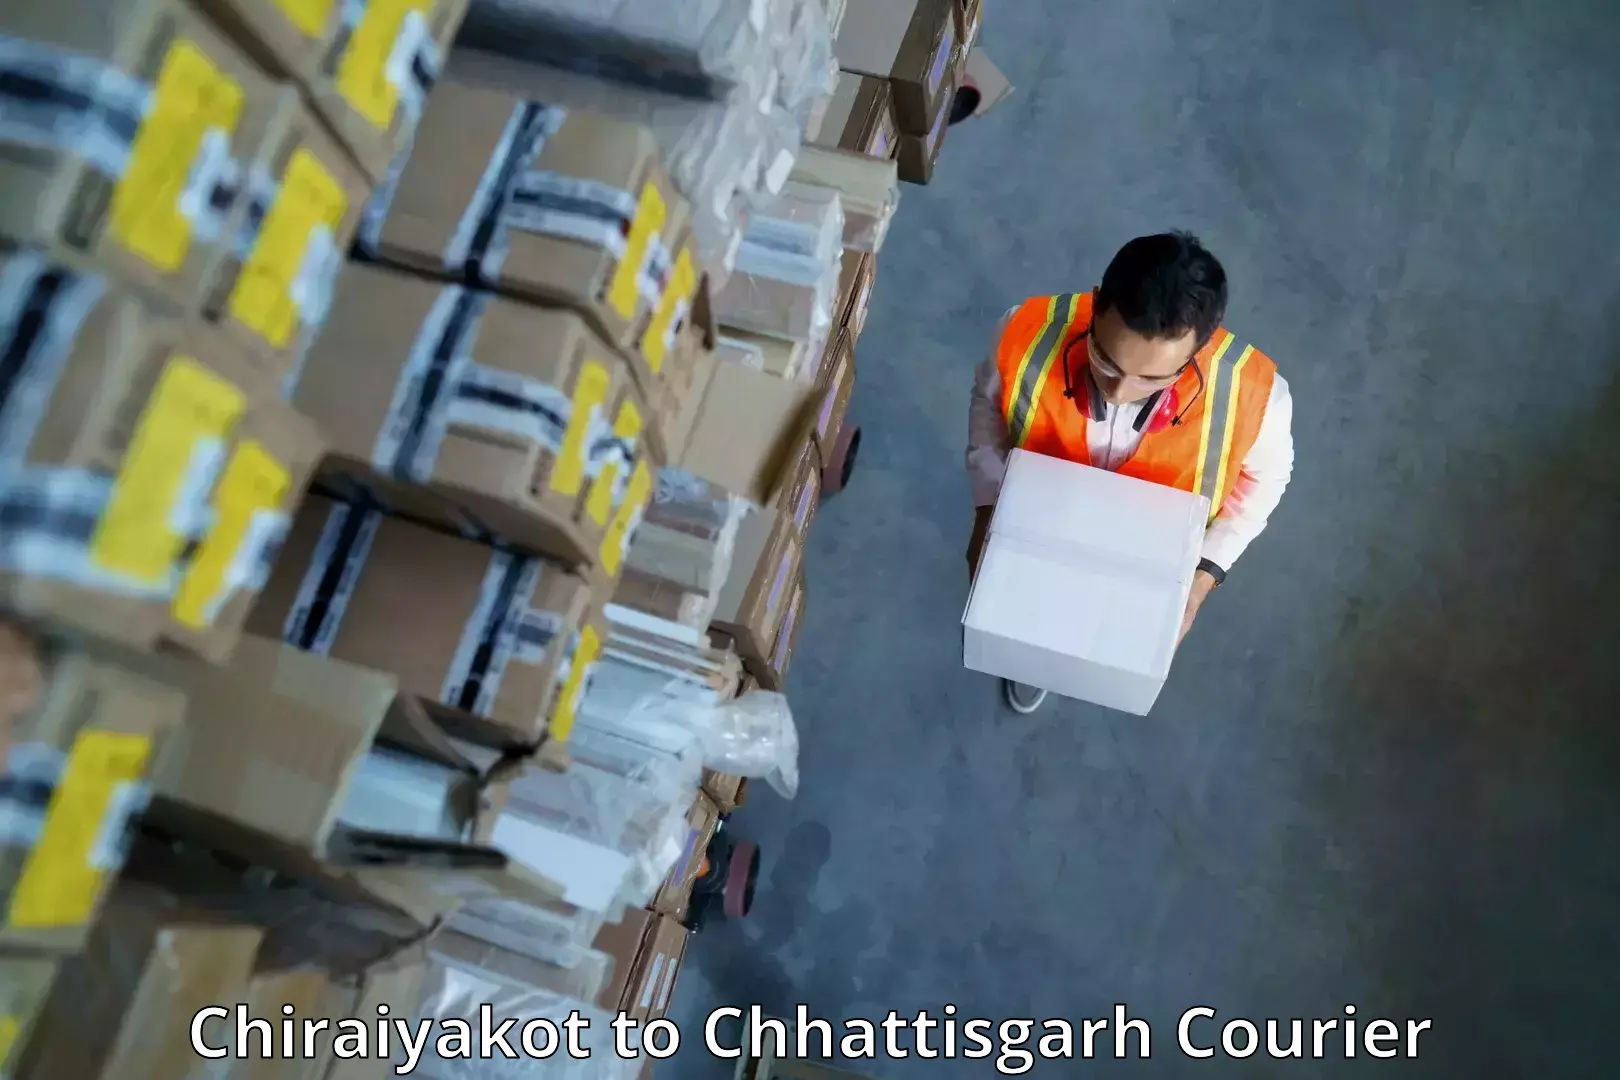 Efficient shipping operations Chiraiyakot to Pendra